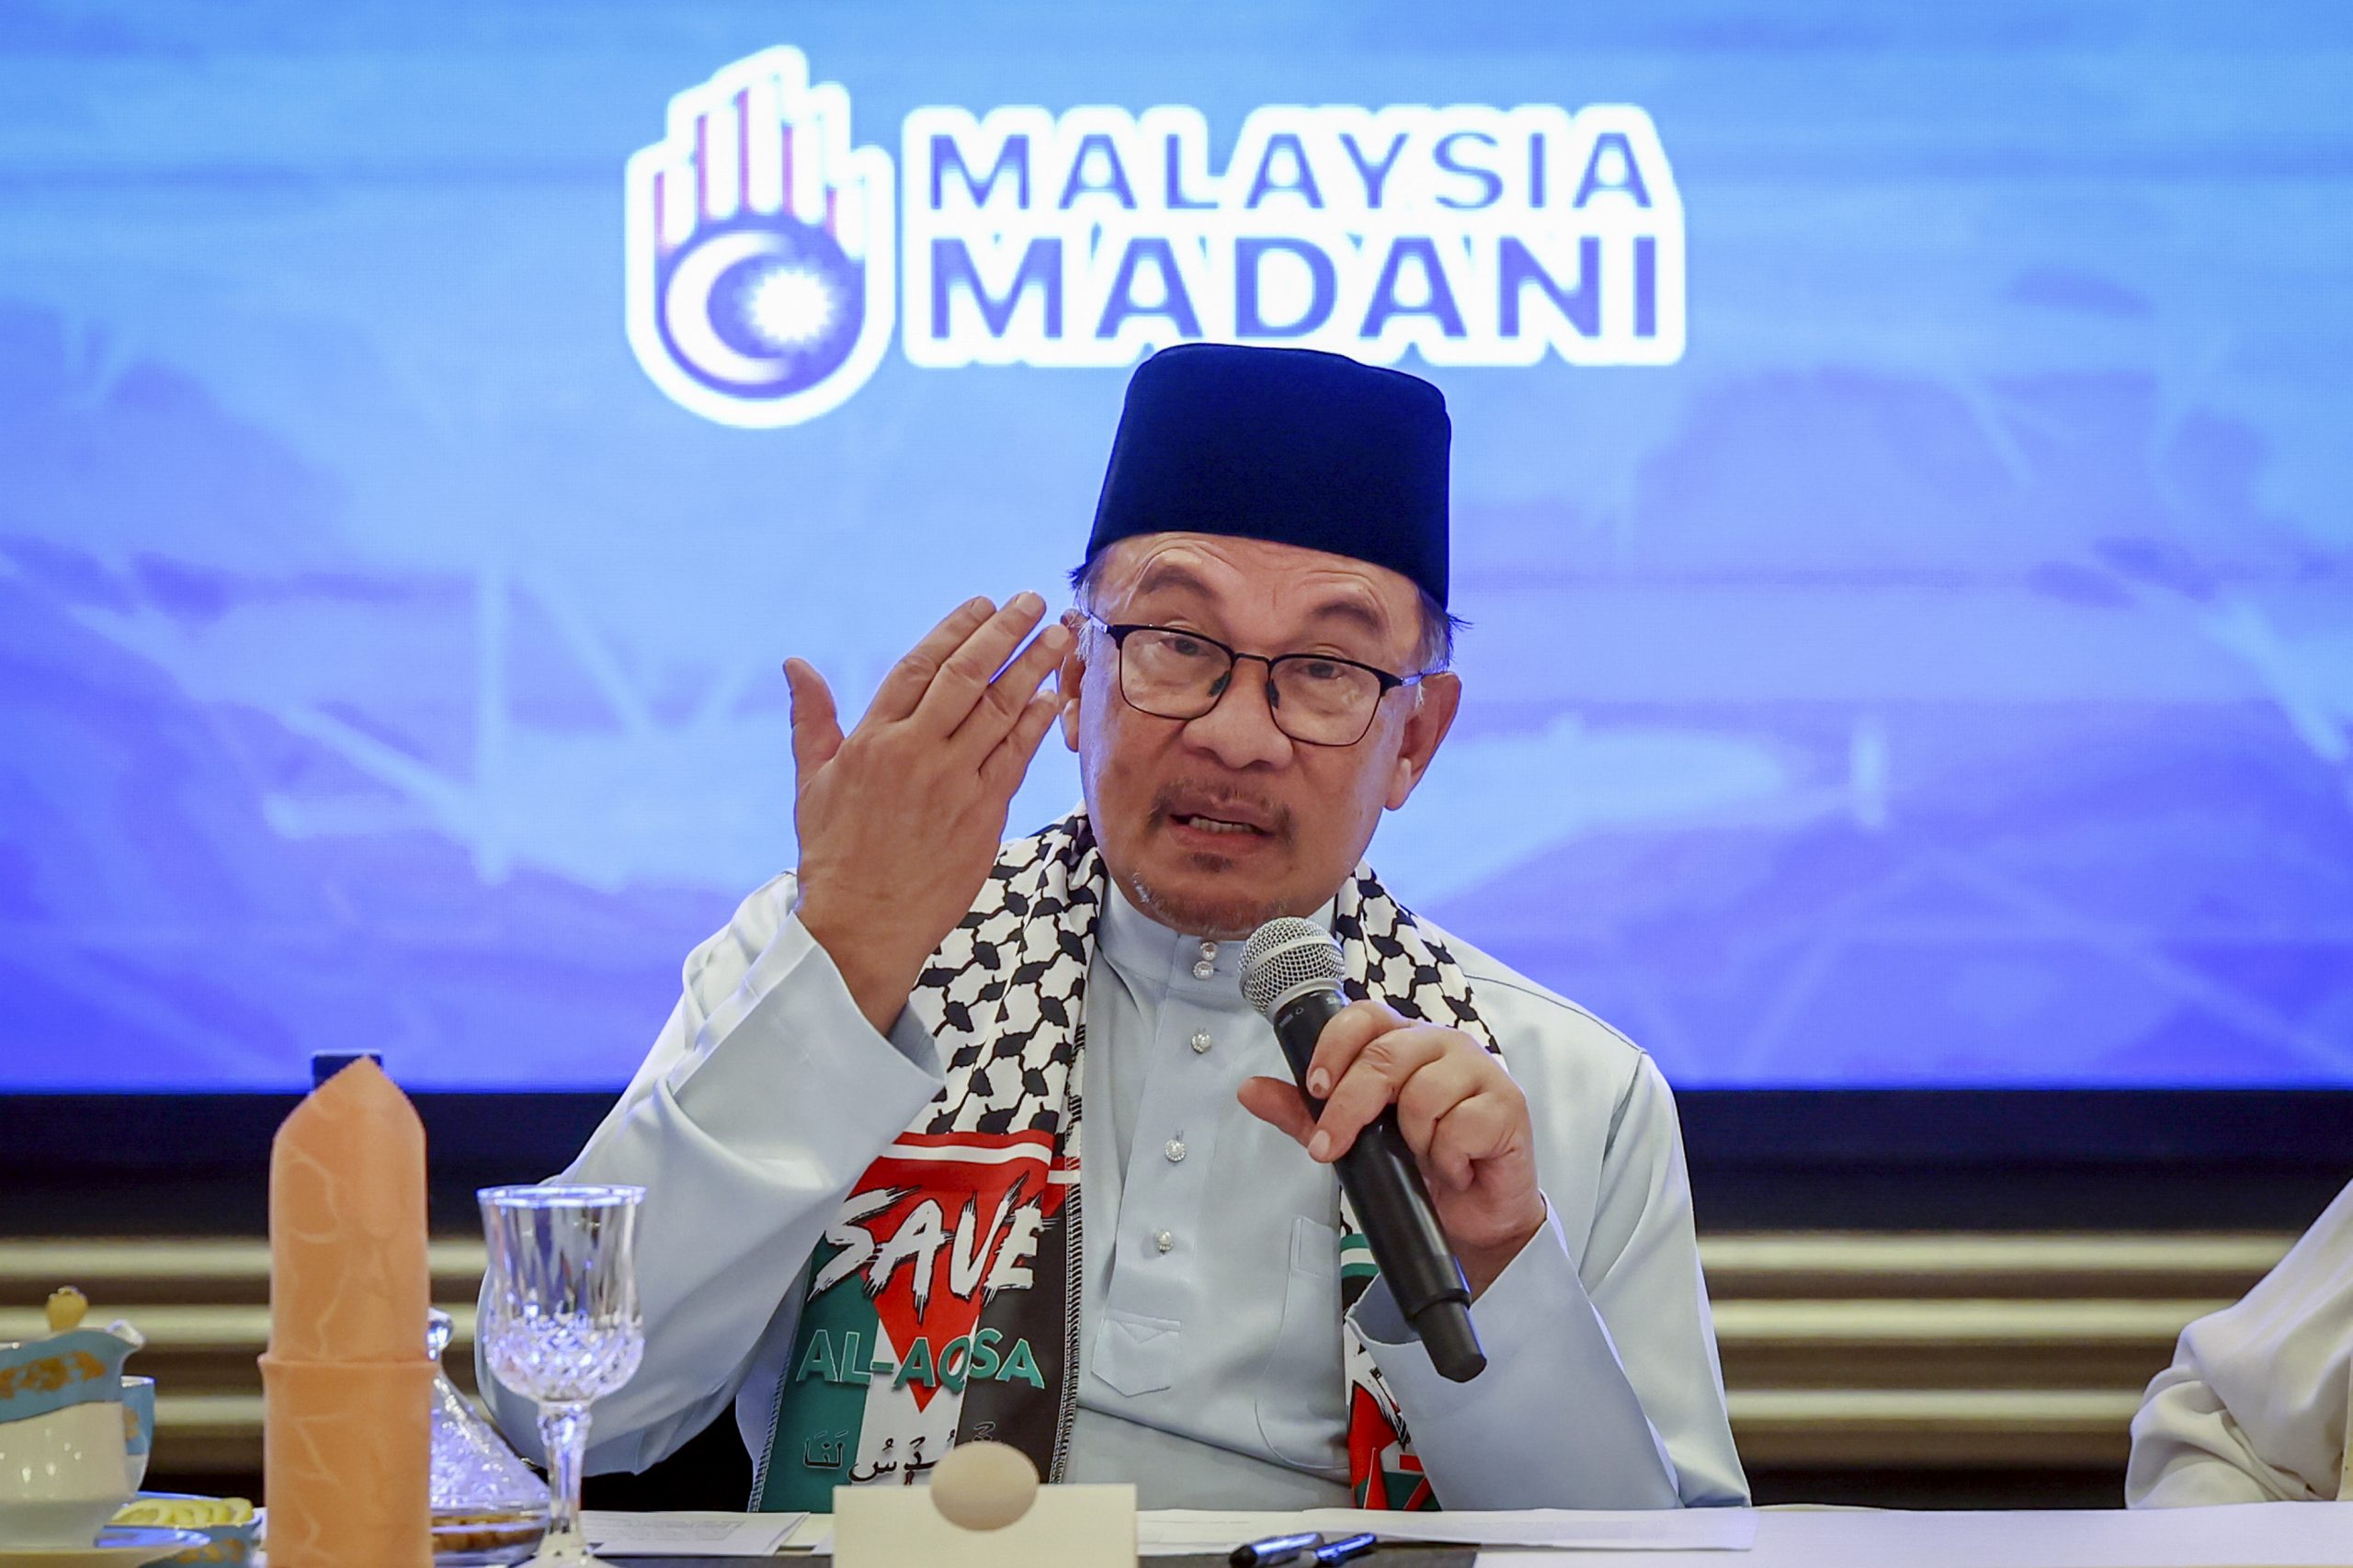 Kefahaman tentang ilmu perlu jadi teras membangunkan Malaysia Madani: Anwar